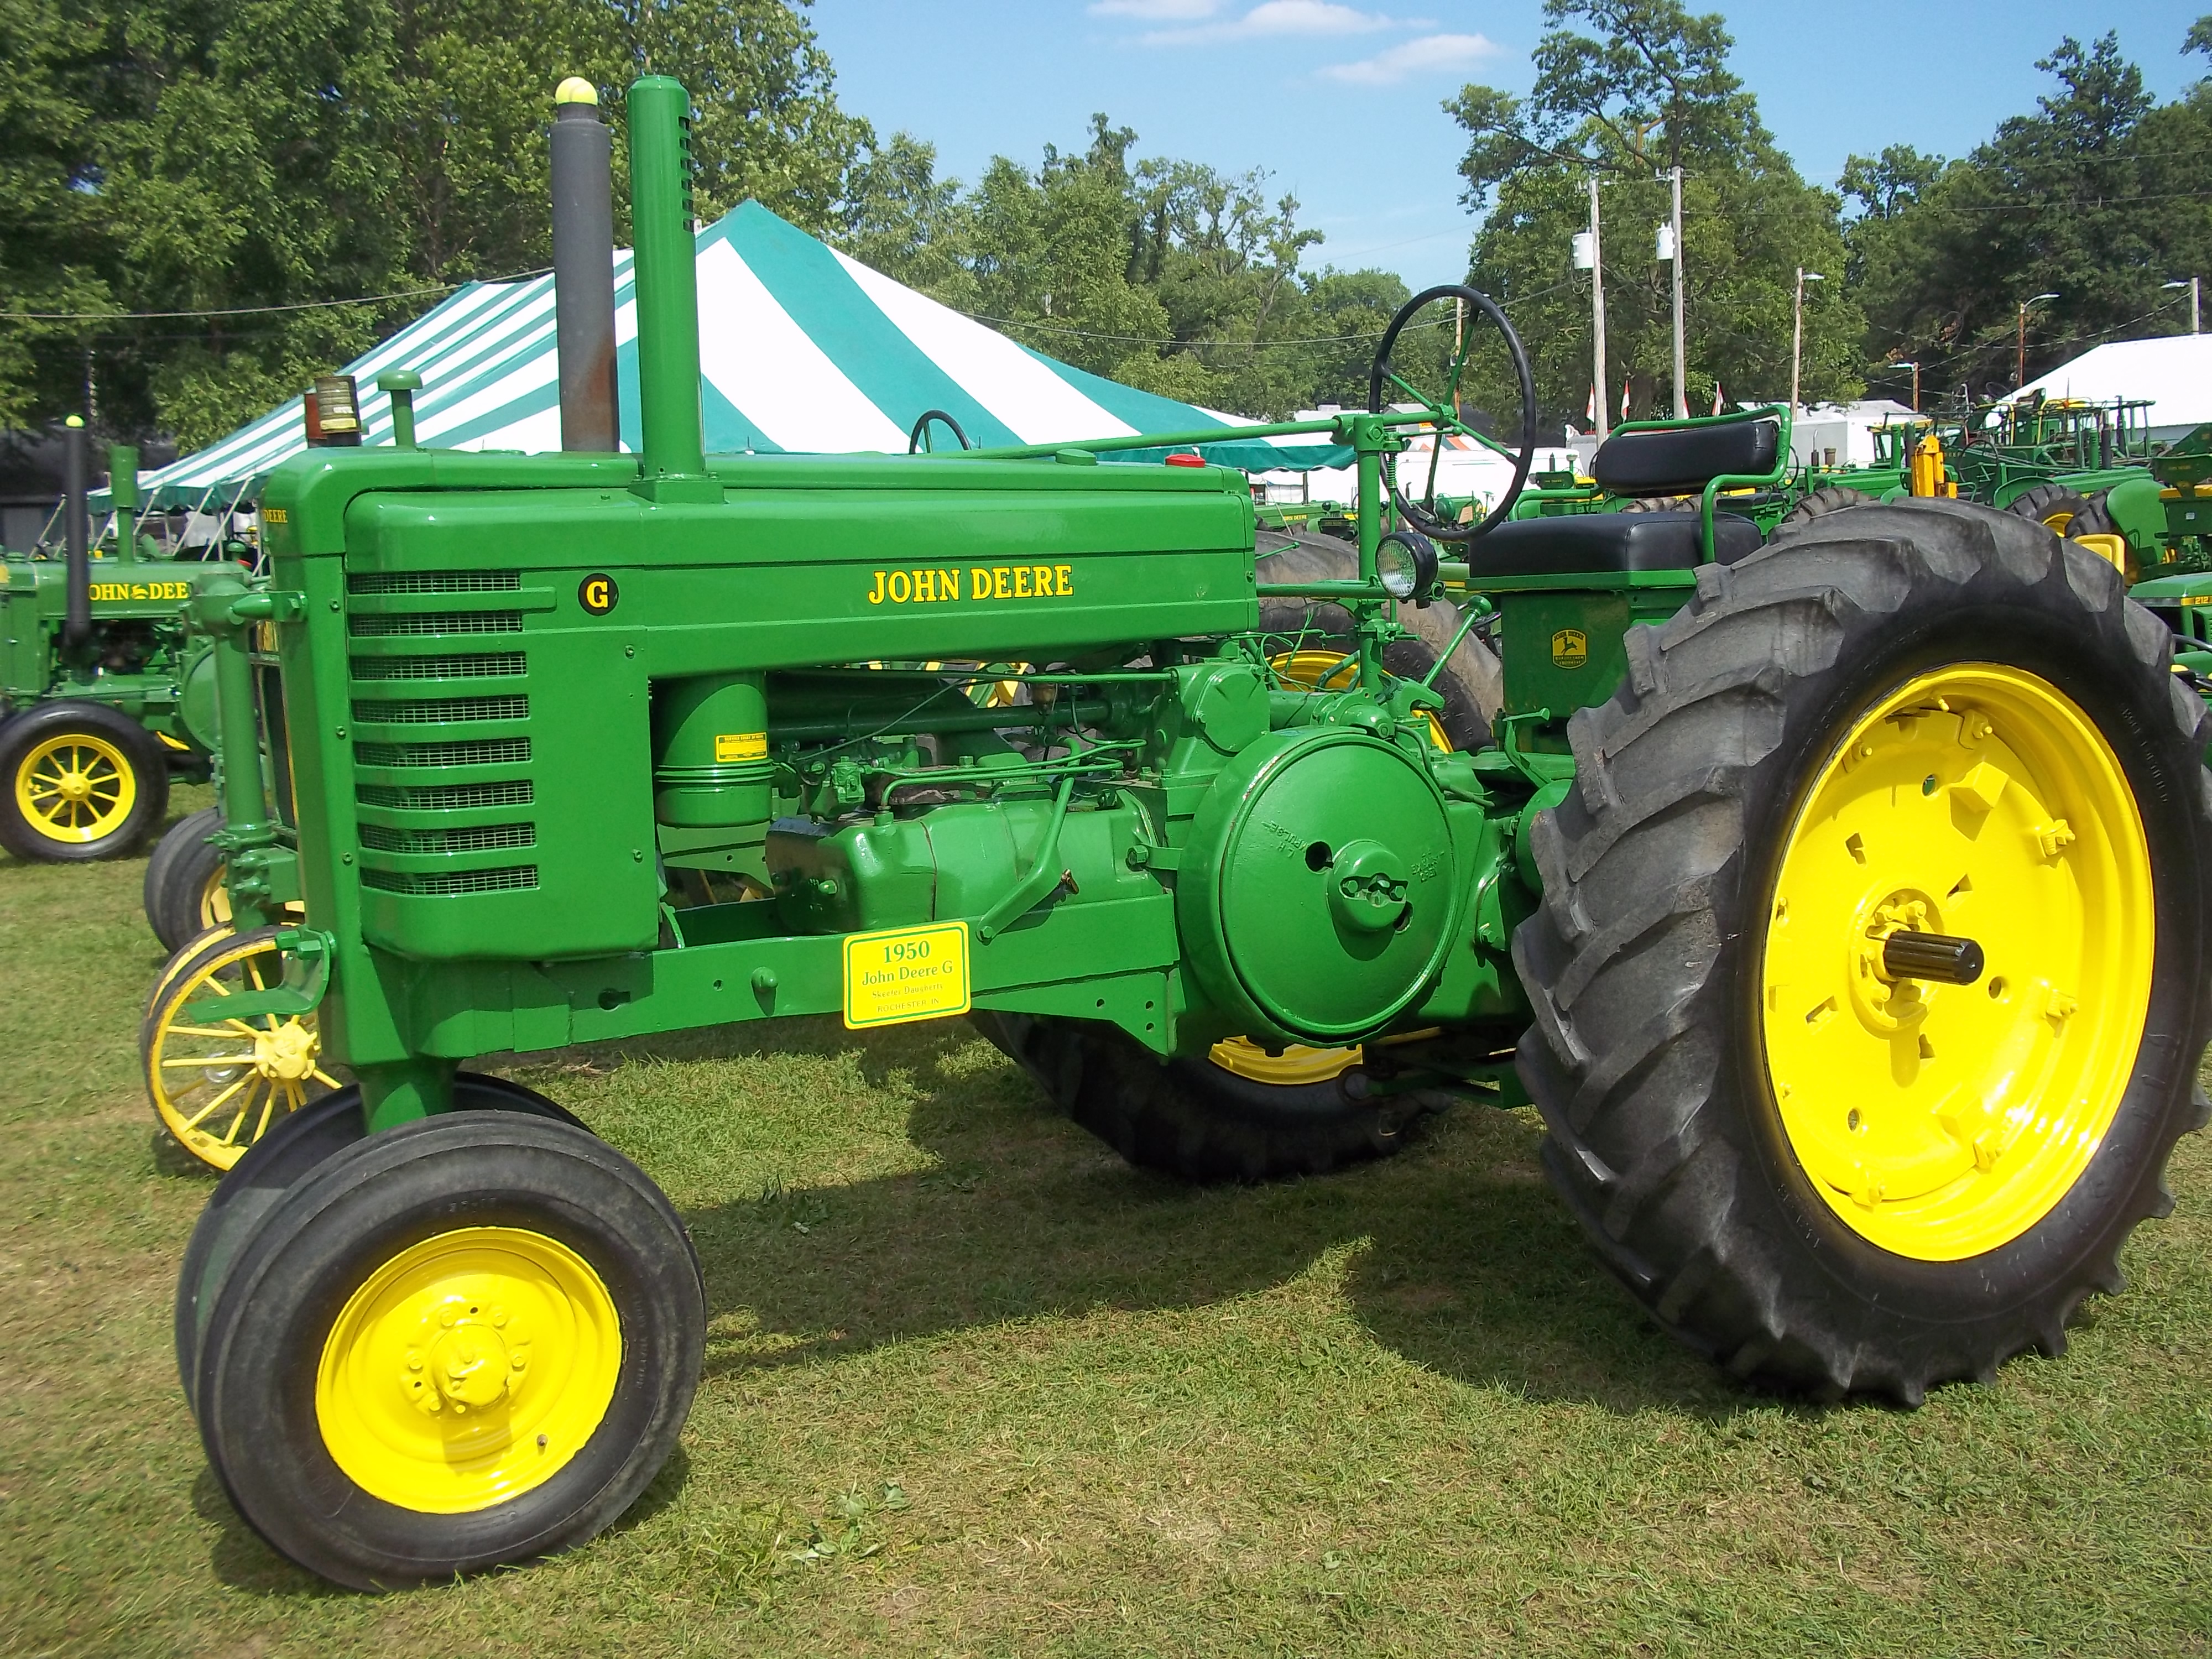 Model G tractor | John Deere equipment | Pinterest